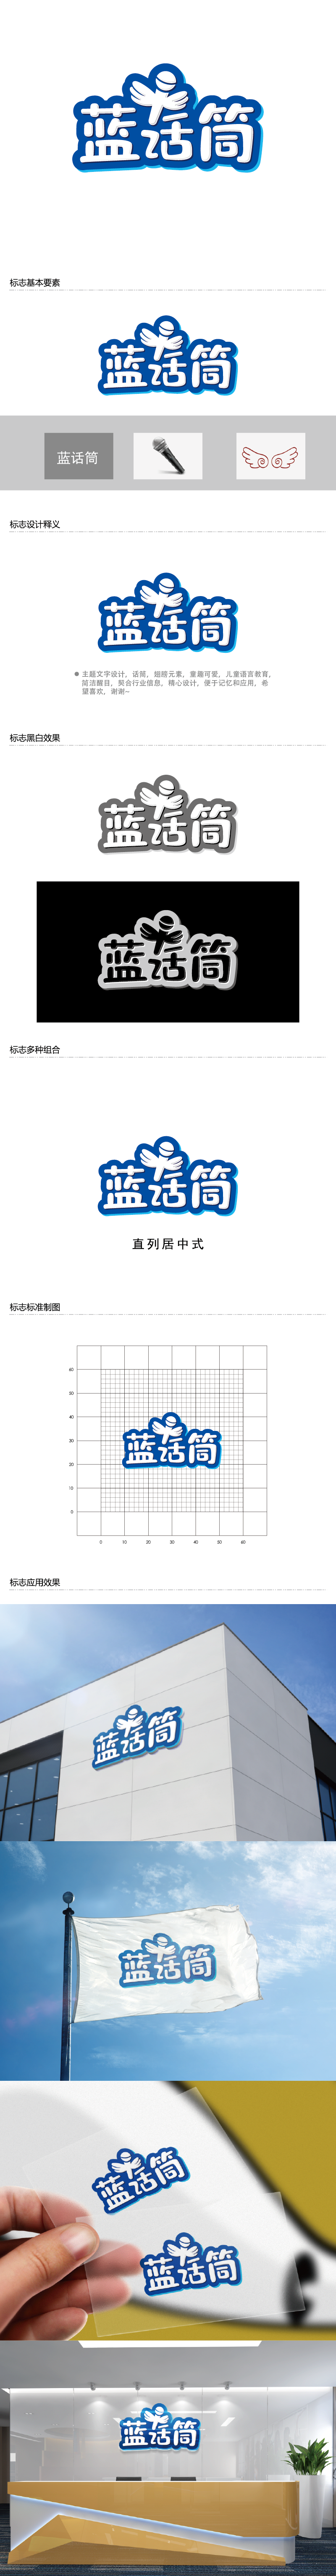 王涛的蓝话筒【重新整理设计需求】logo设计